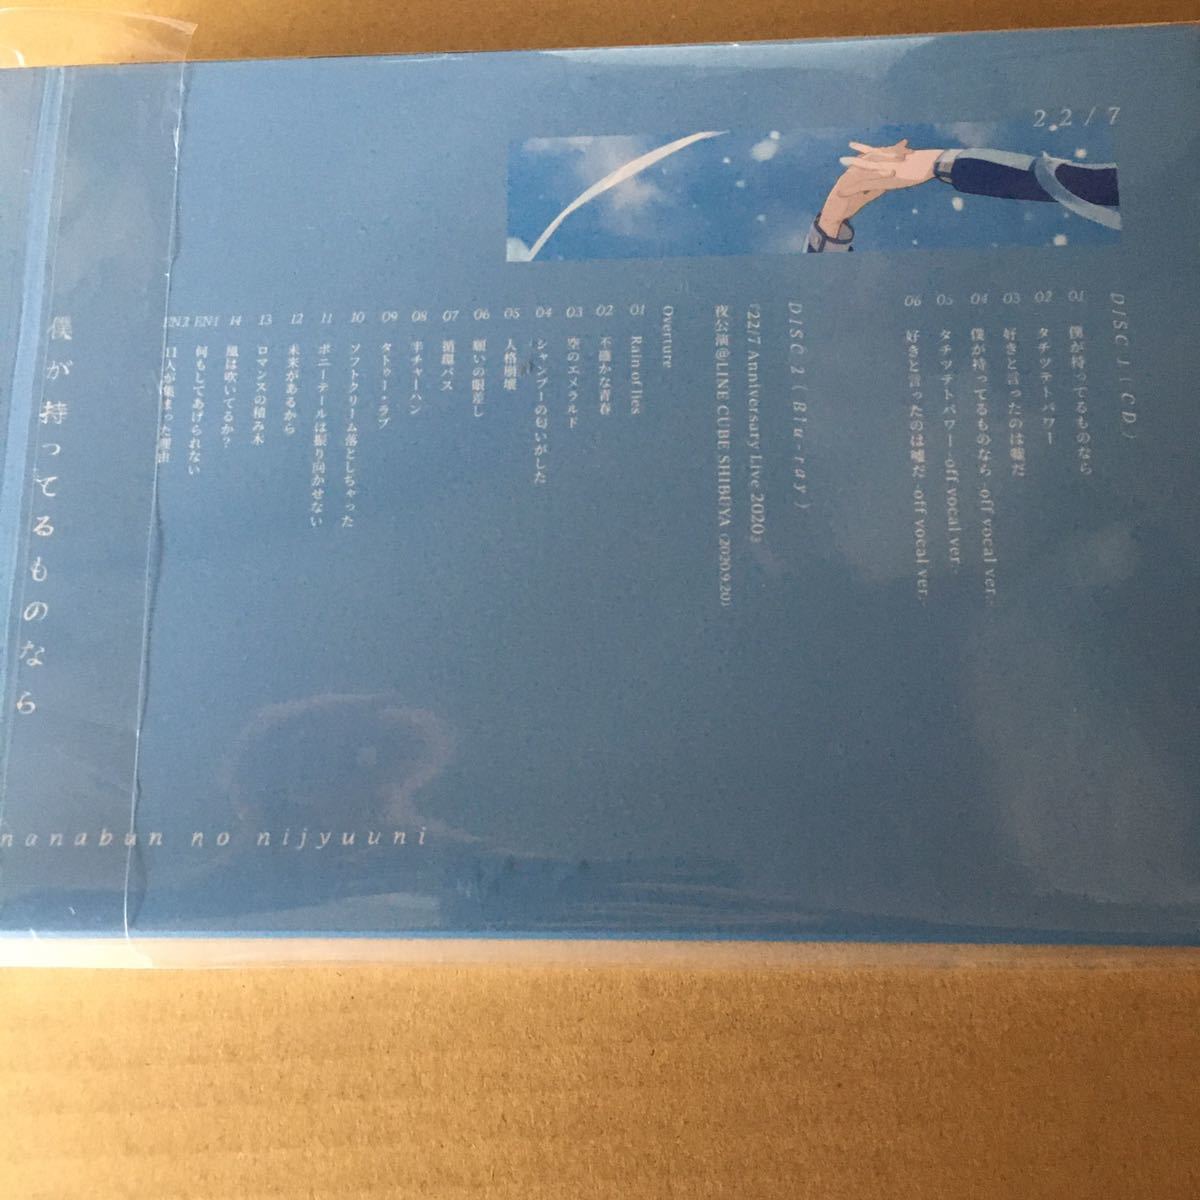 当店限定 即決 22 7 ナナブンノニジュウニ 僕が持ってるものなら 完全生産限定盤b Blu Ray 新品未開封 セール30 Off